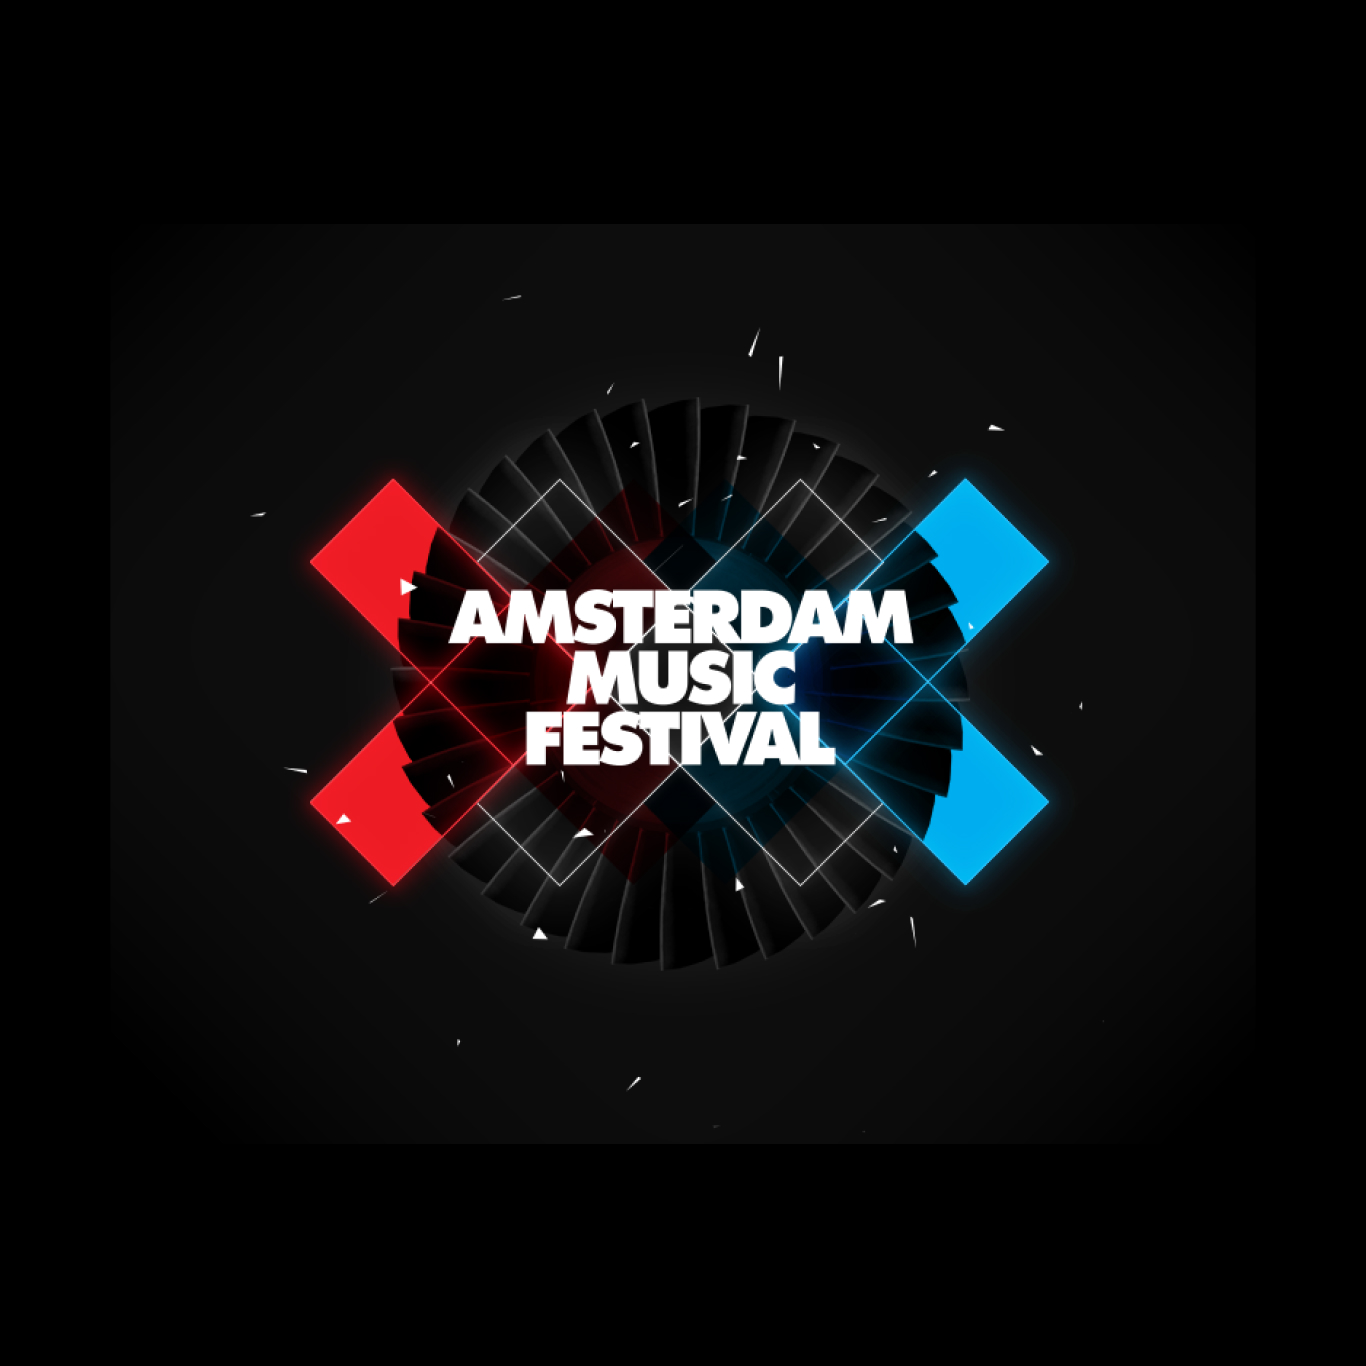 Website Design for Amsterdam Music Festival